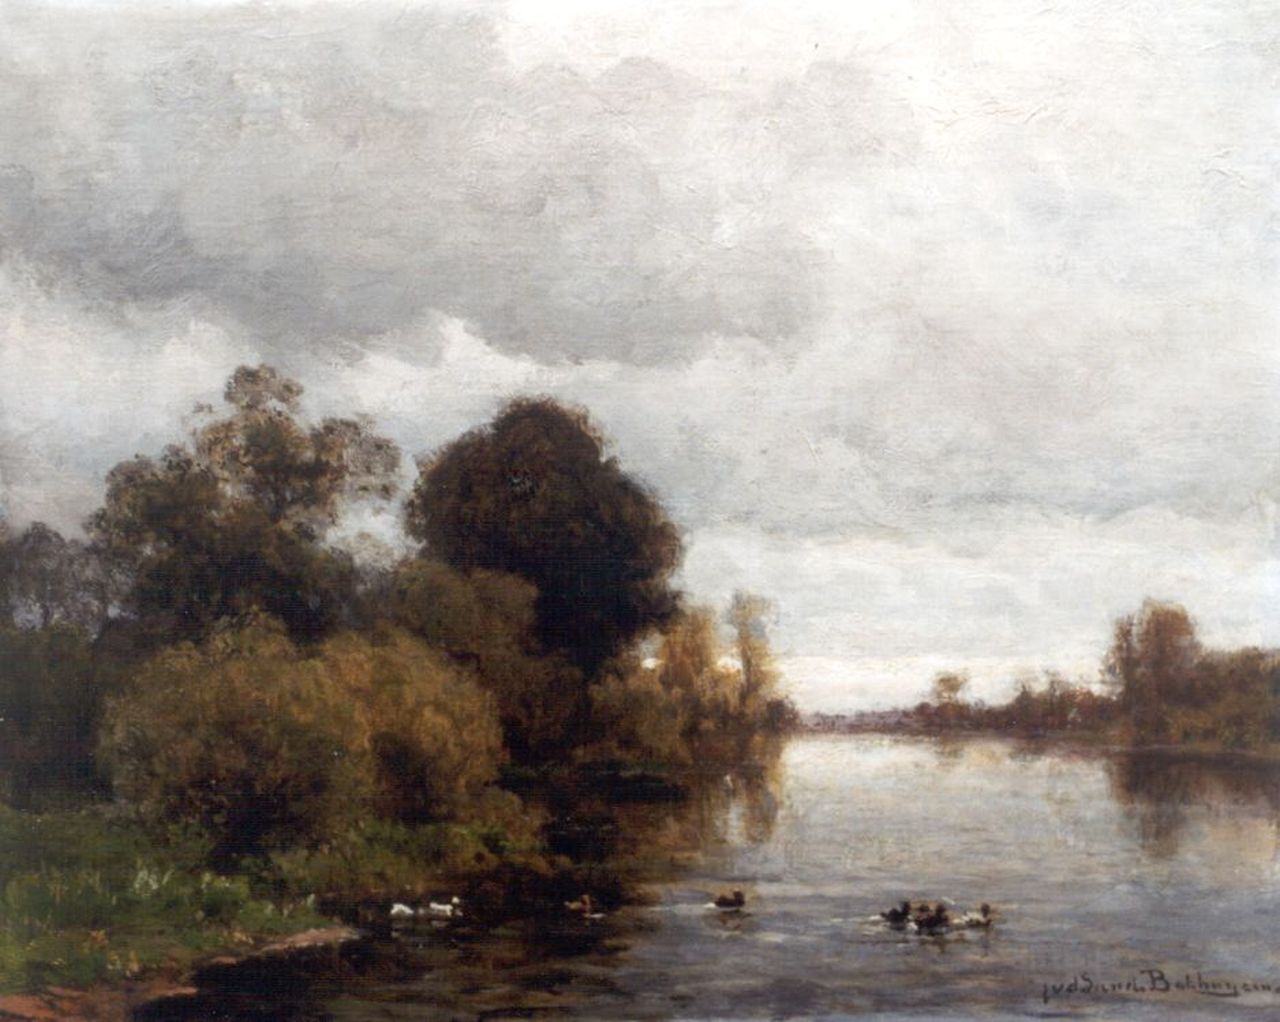 Sande Bakhuyzen J.J. van de | Julius Jacobus van de Sande Bakhuyzen, Verstild riviergezicht, olieverf op doek op paneel 37,2 x 45,2 cm, gesigneerd rechtsonder